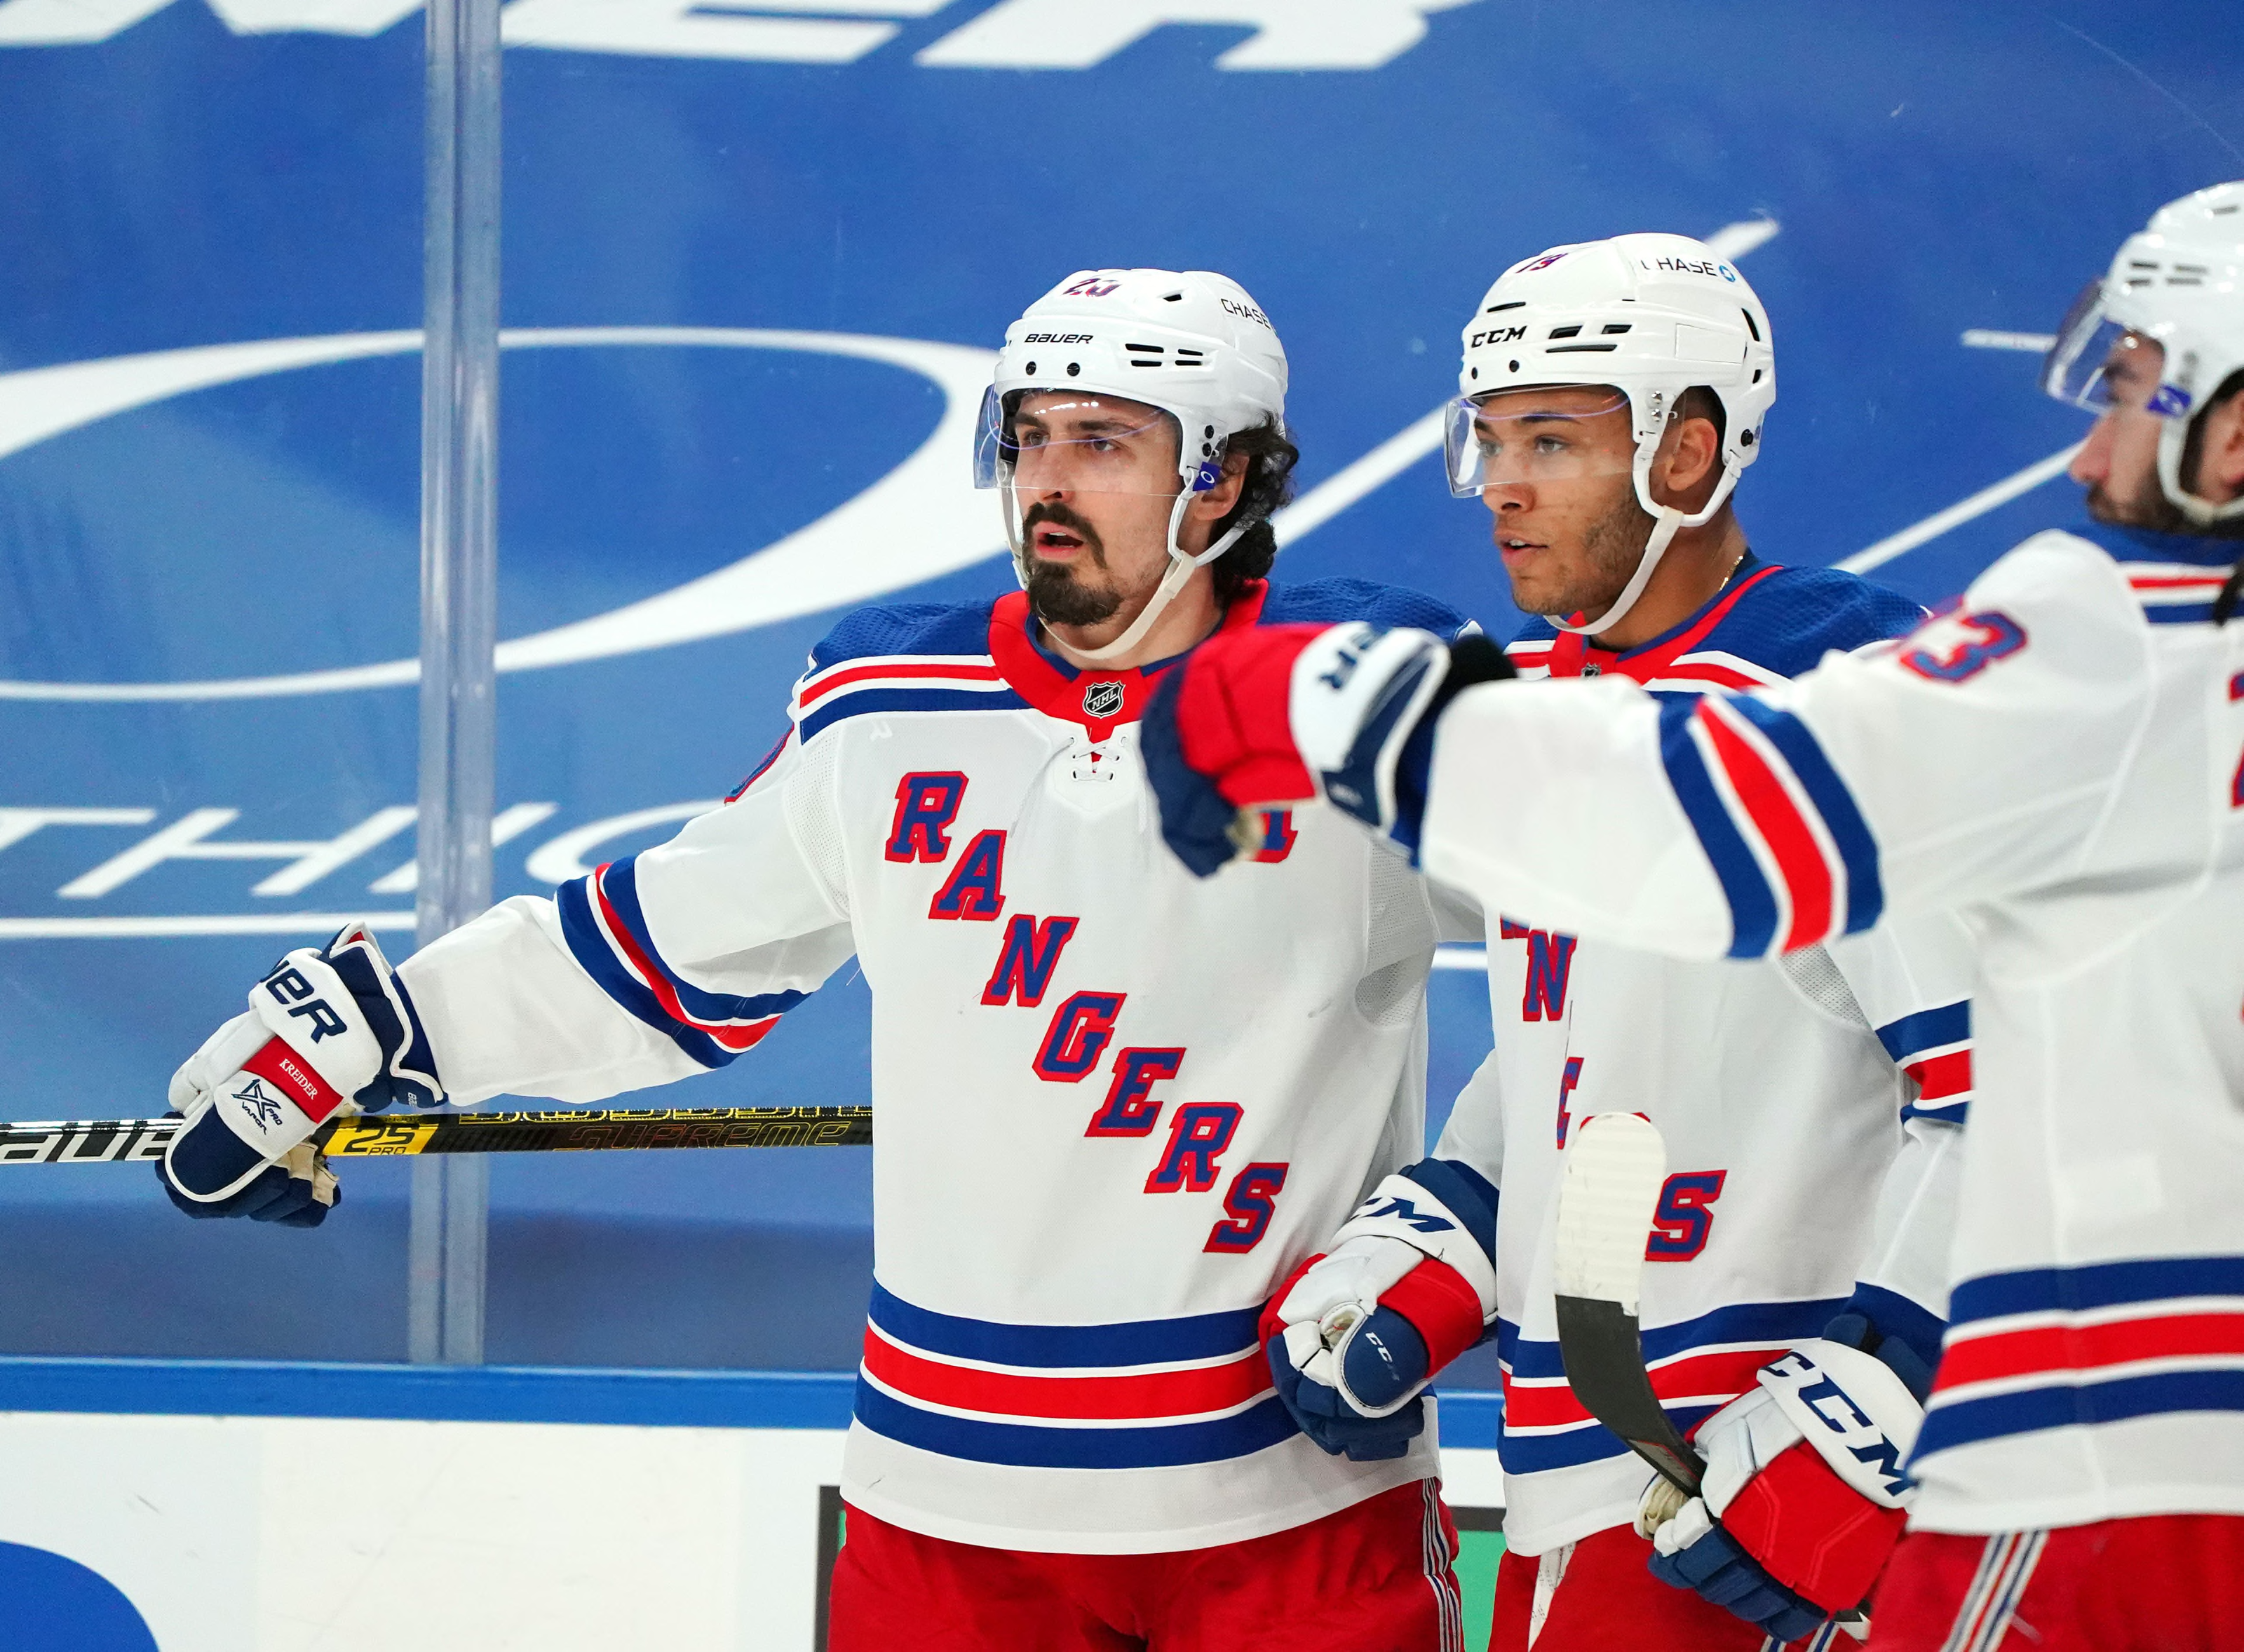 New York Rangers: K'Andre Miller focused on development & Team USA